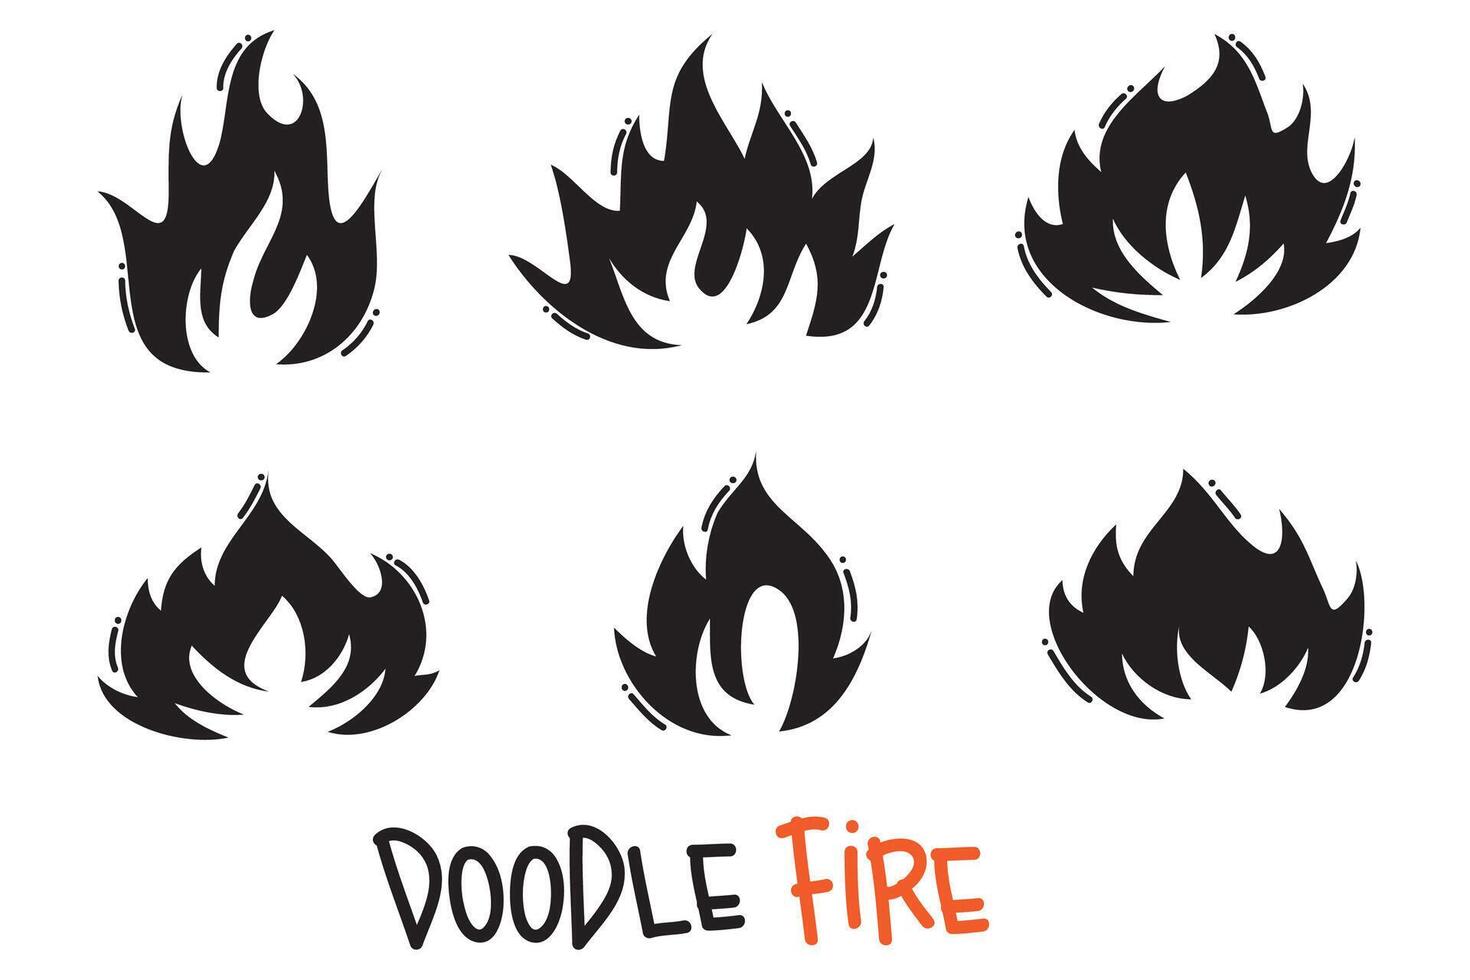 iconos de fuego dibujados a mano. conjunto de vectores de iconos de llamas de fuego. fuego de boceto de garabato dibujado a mano, dibujo en blanco y negro. símbolo de fuego simple.